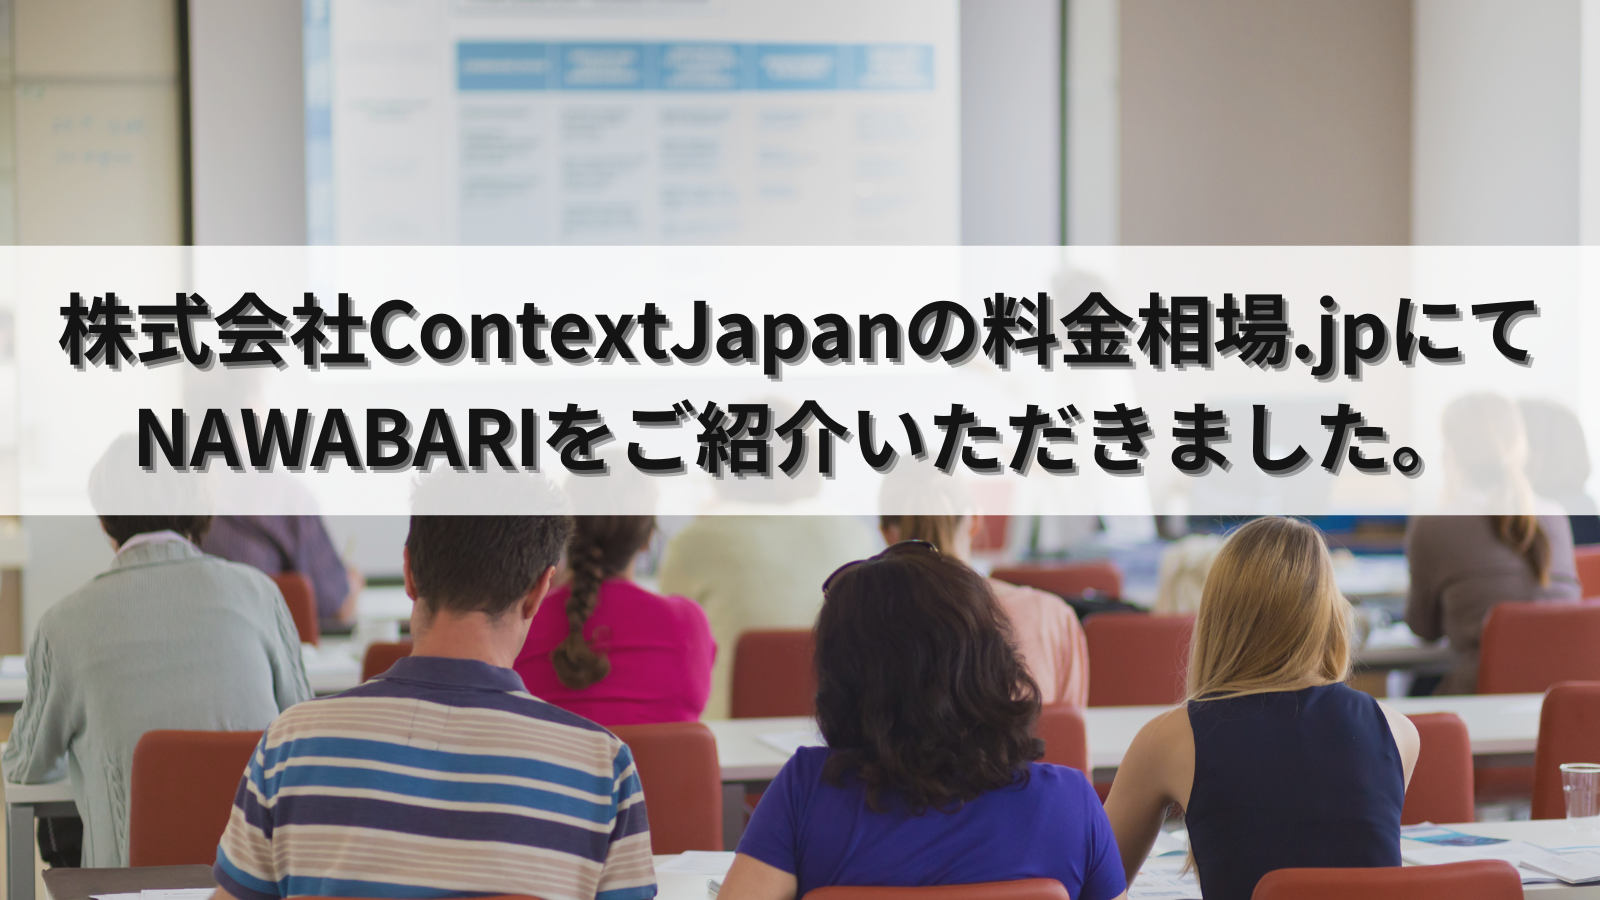 株式会社ContextJapanの運営するWebメディア「料金相場.jp」にてNAWABARIが紹介されました。|最新情報